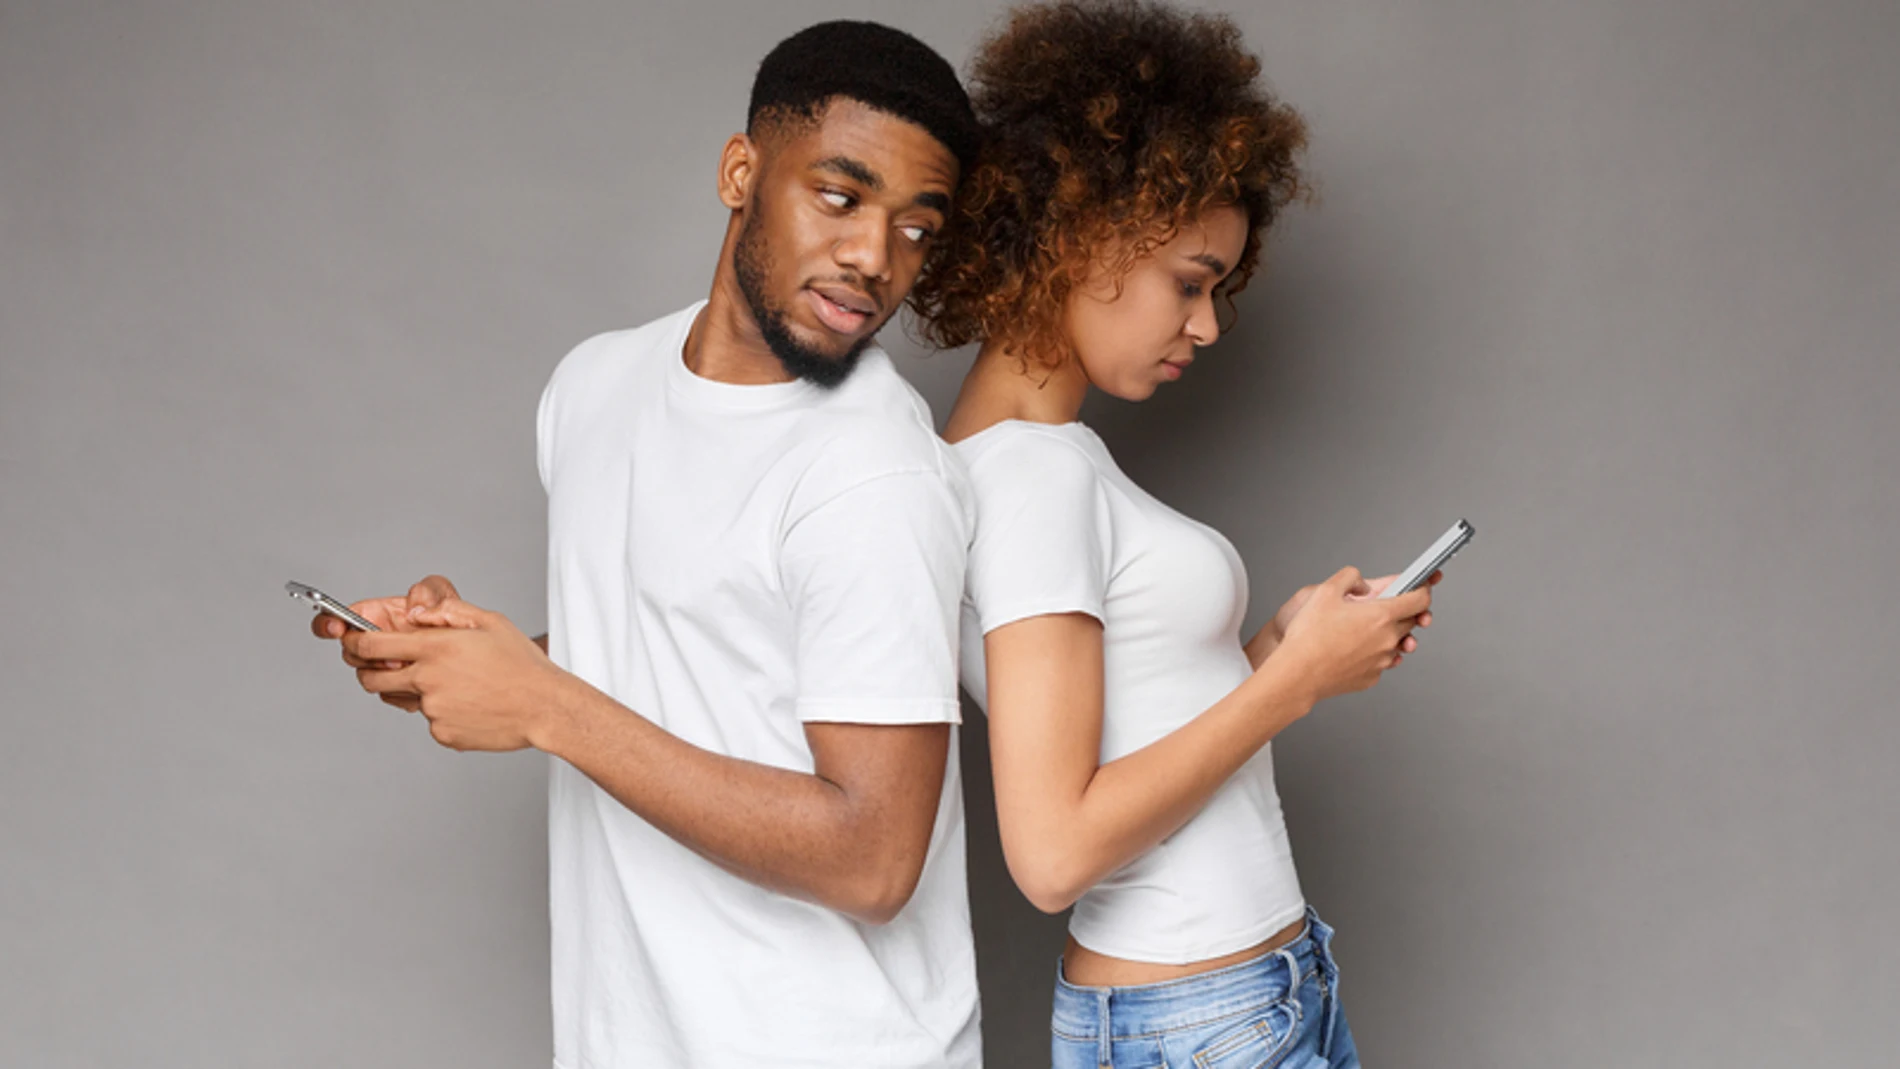 El móvil, el mayor arma de infidelidad